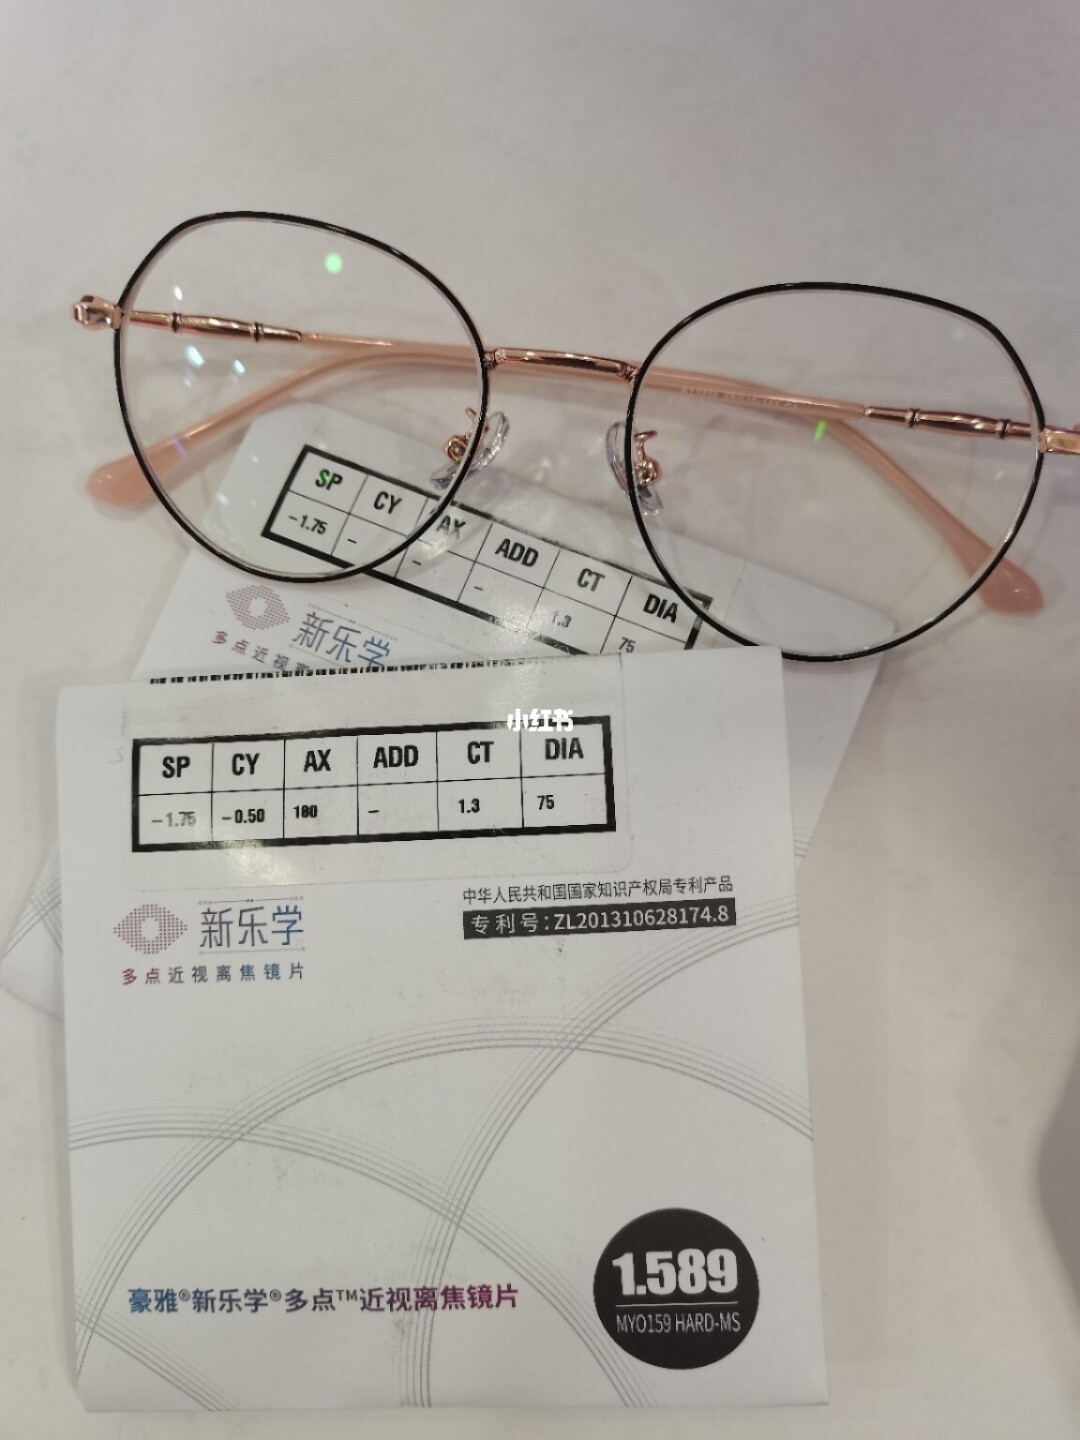 上海吴良材眼镜全国服务热线__上海吴良材眼镜加盟费多少钱